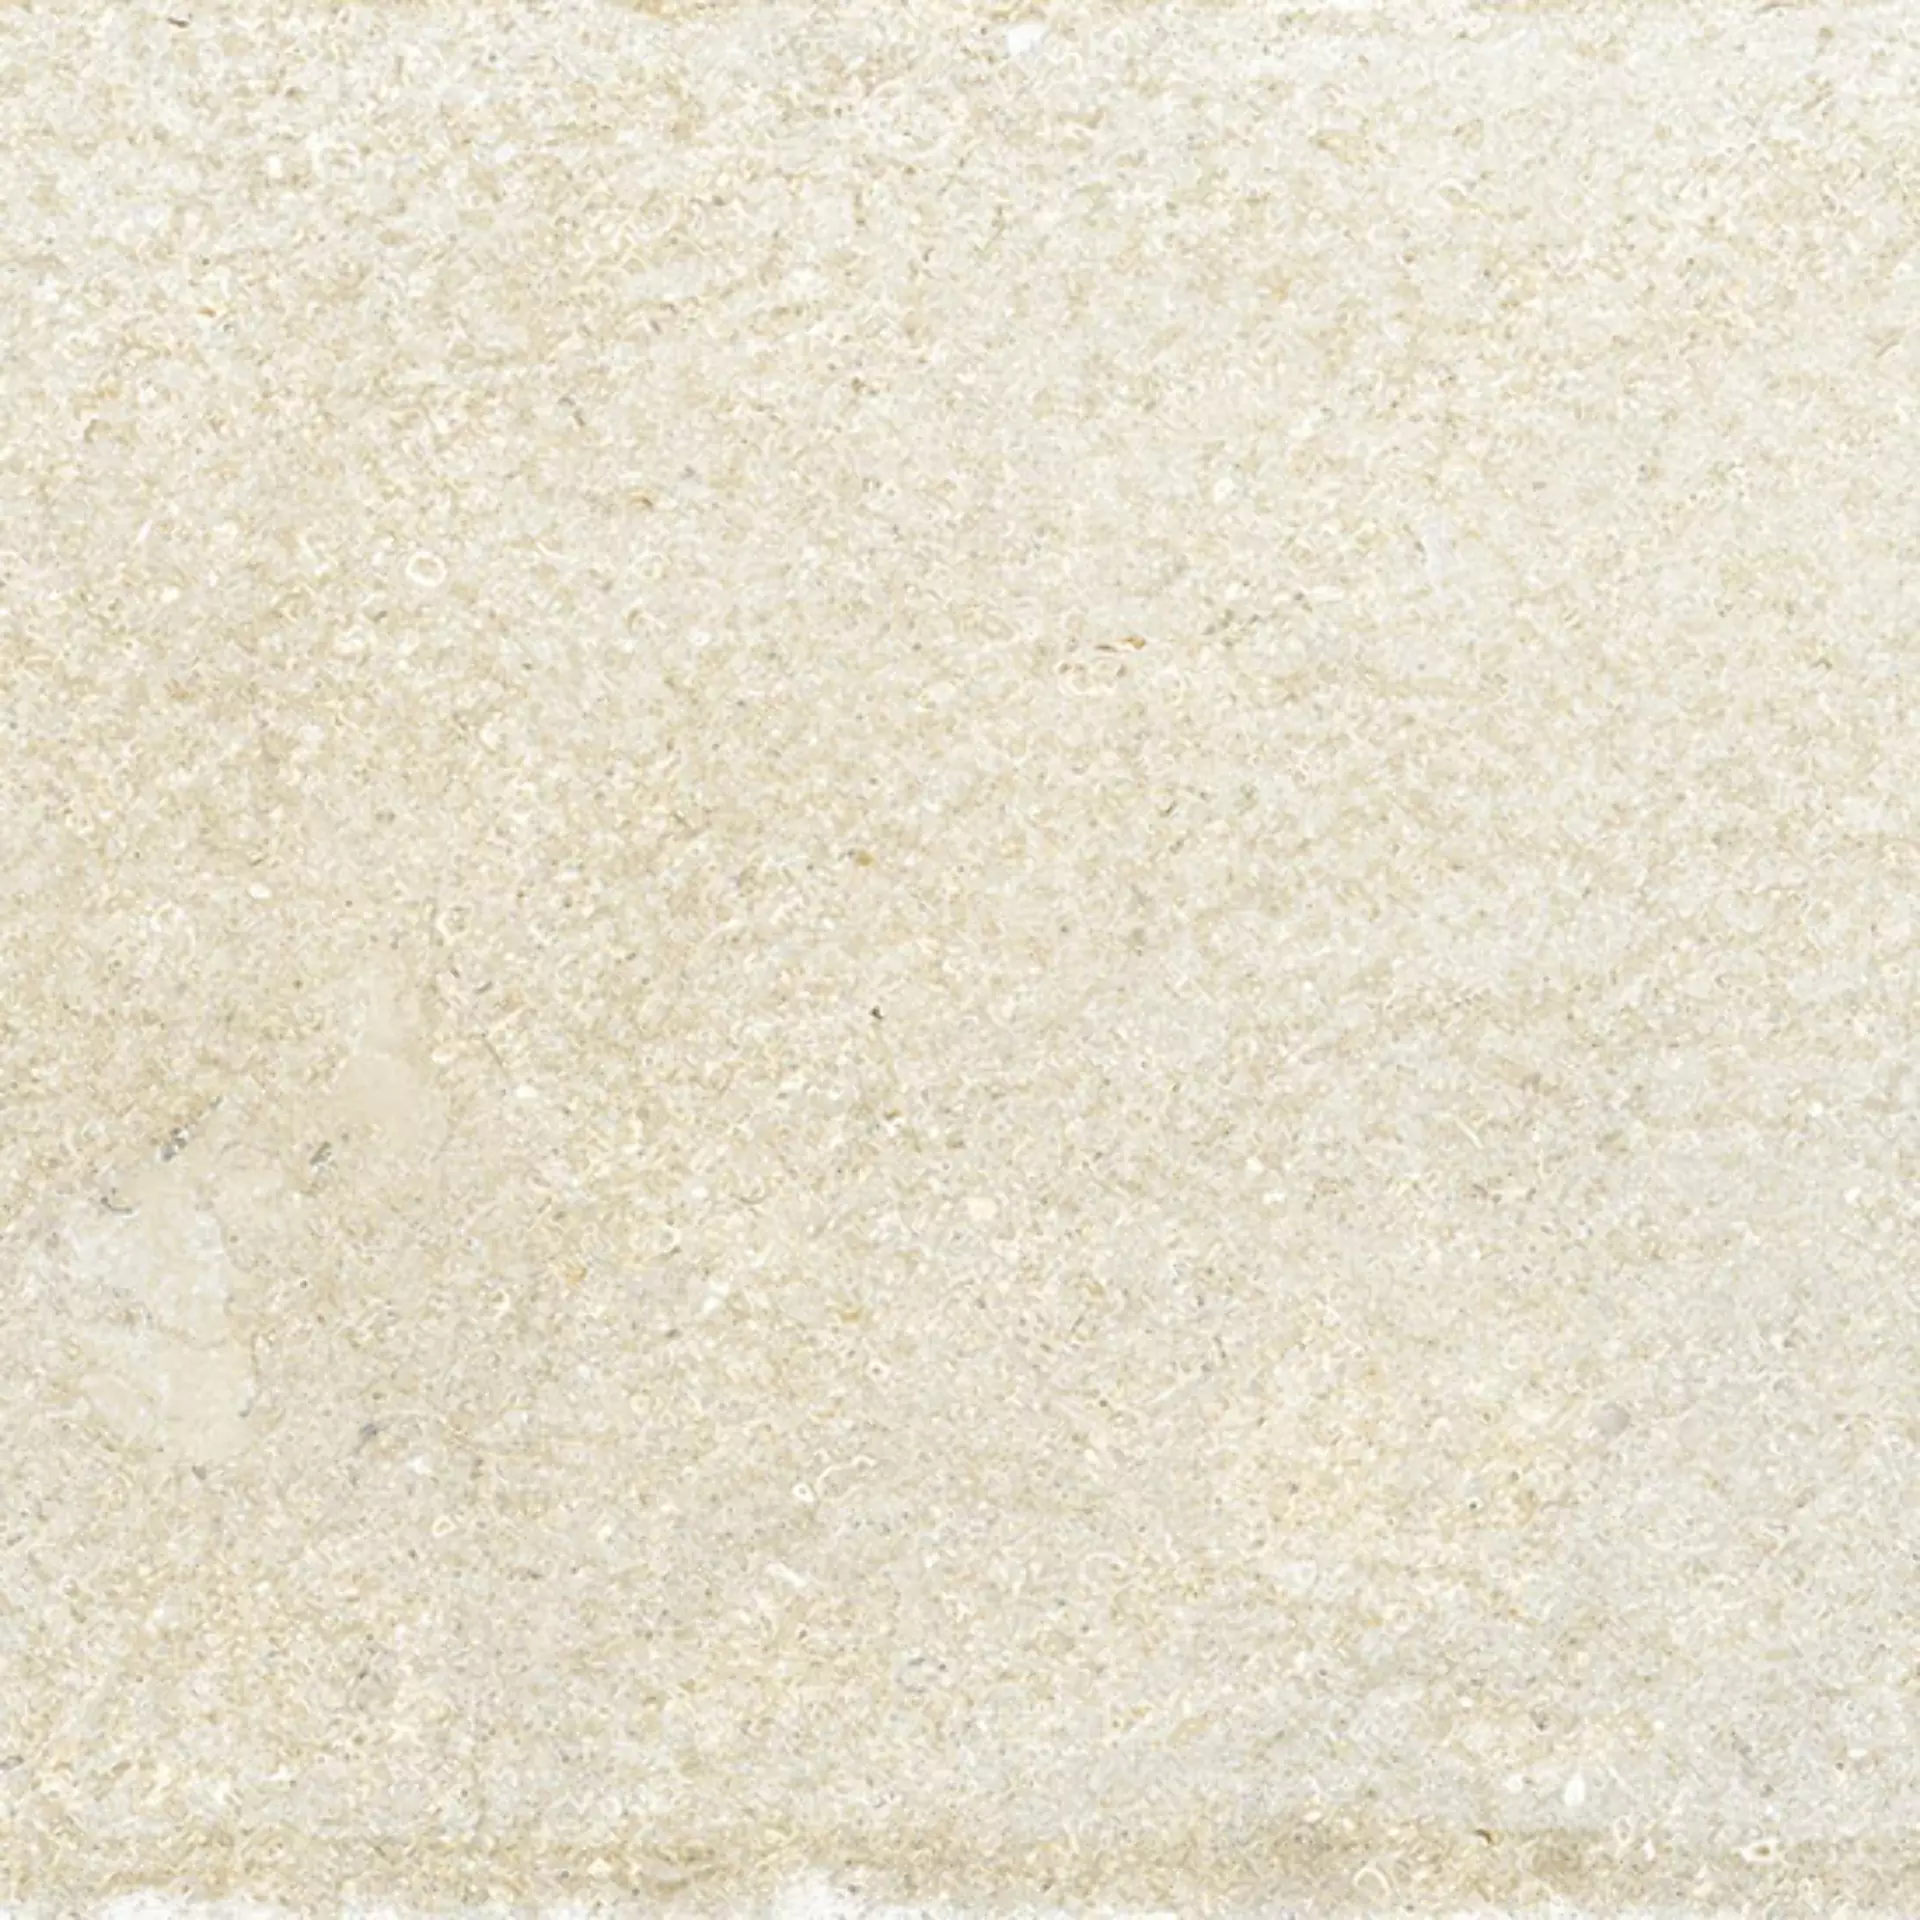 Fioranese Borgogna Bianco Esterno Bianco 0BG461E outdoor 40,8x61,4cm 9mm